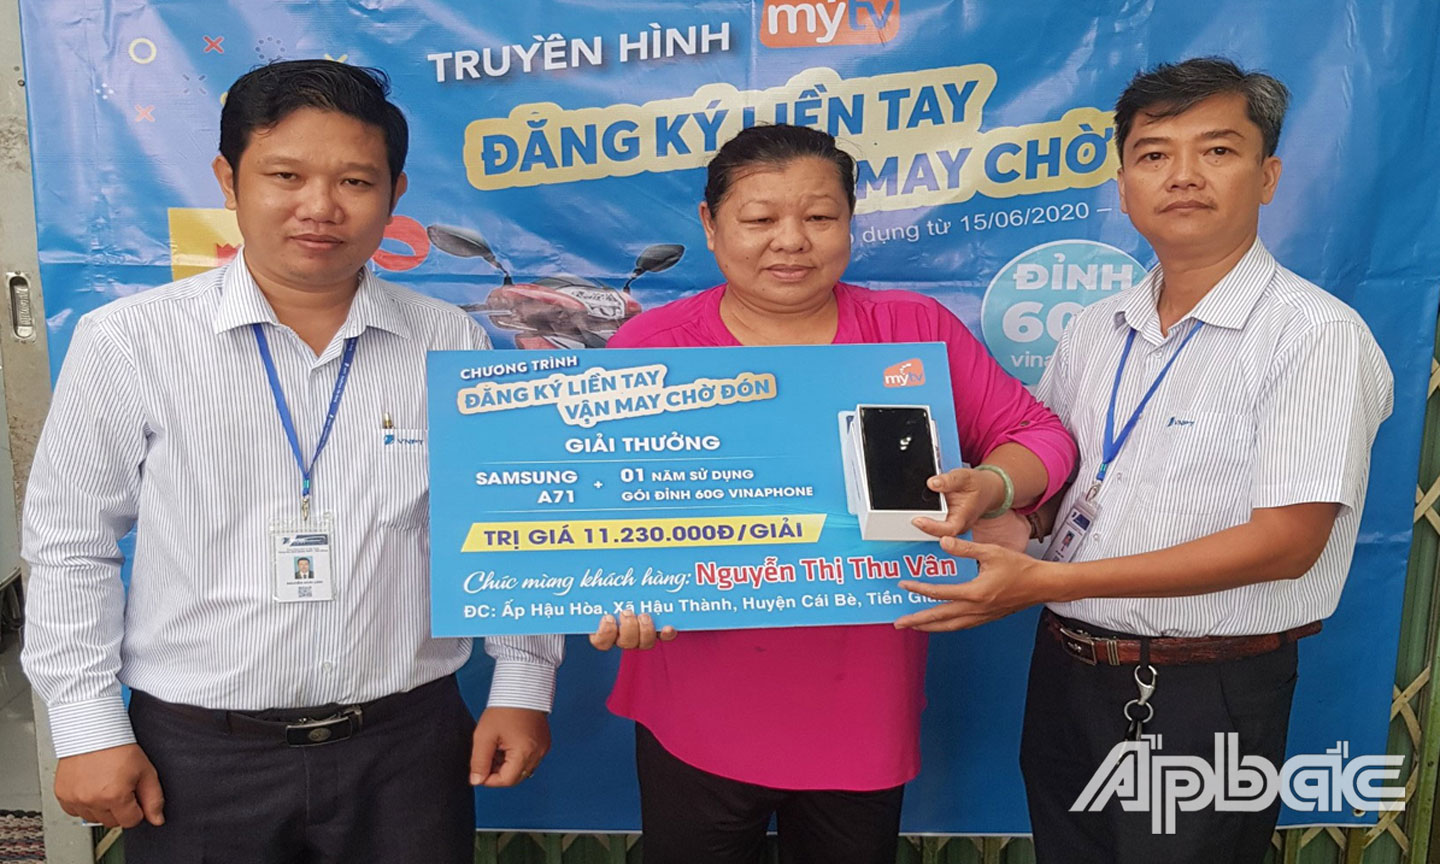 Ông Nguyễn Hoài Linh - PGD VNPT-VinaPhone Tiền Giang & Ông Võ Anh Sơn- GD VinaPhone Cái Bè trao thưởng cho khách hàng Nguyễn Thị Thu Vân.